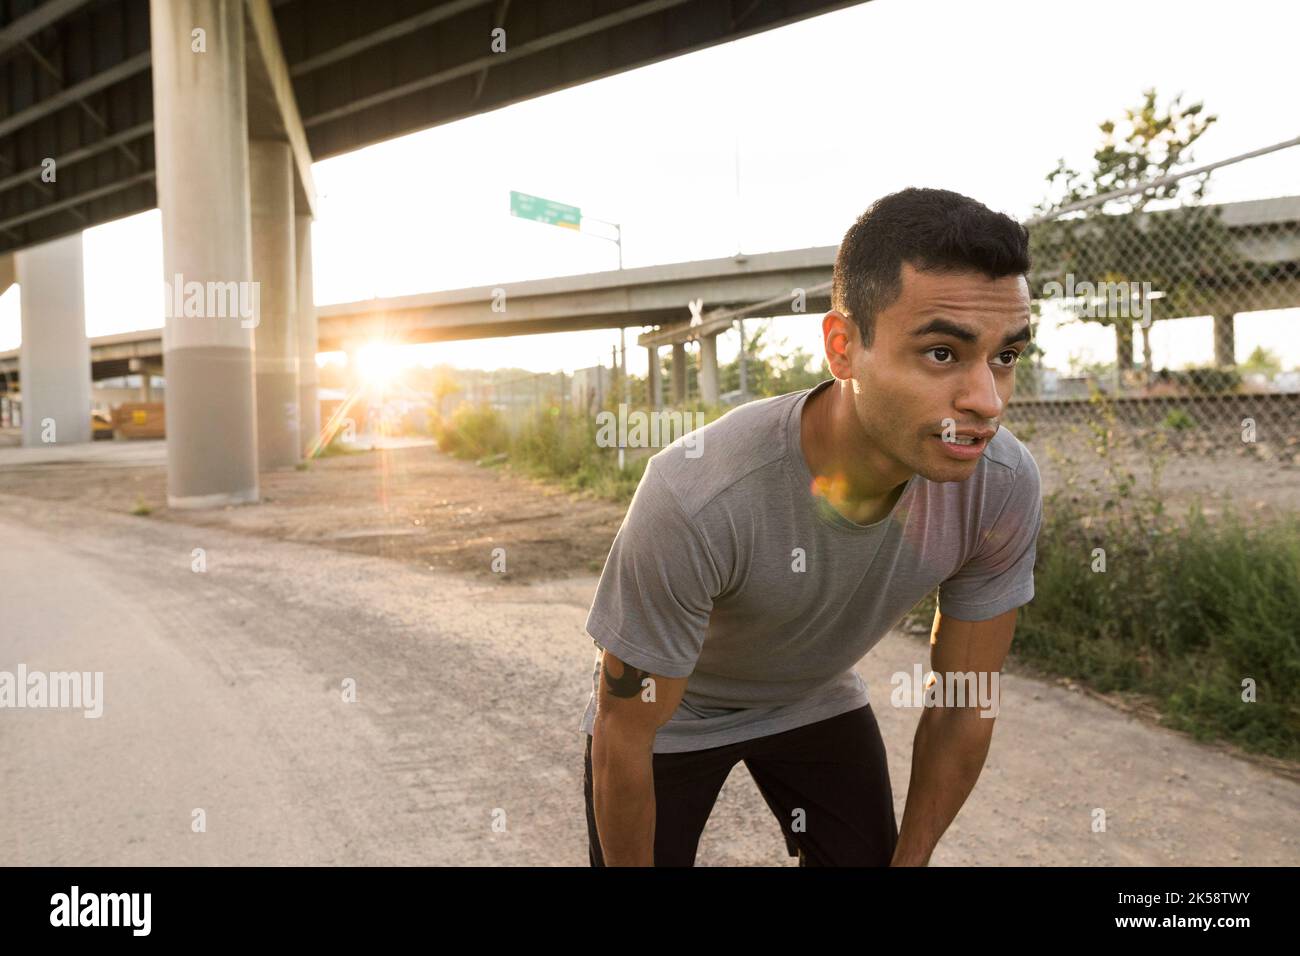 Mittelerwachsener Mann erholt sich von einem Lauf in der Stadt Stockfoto